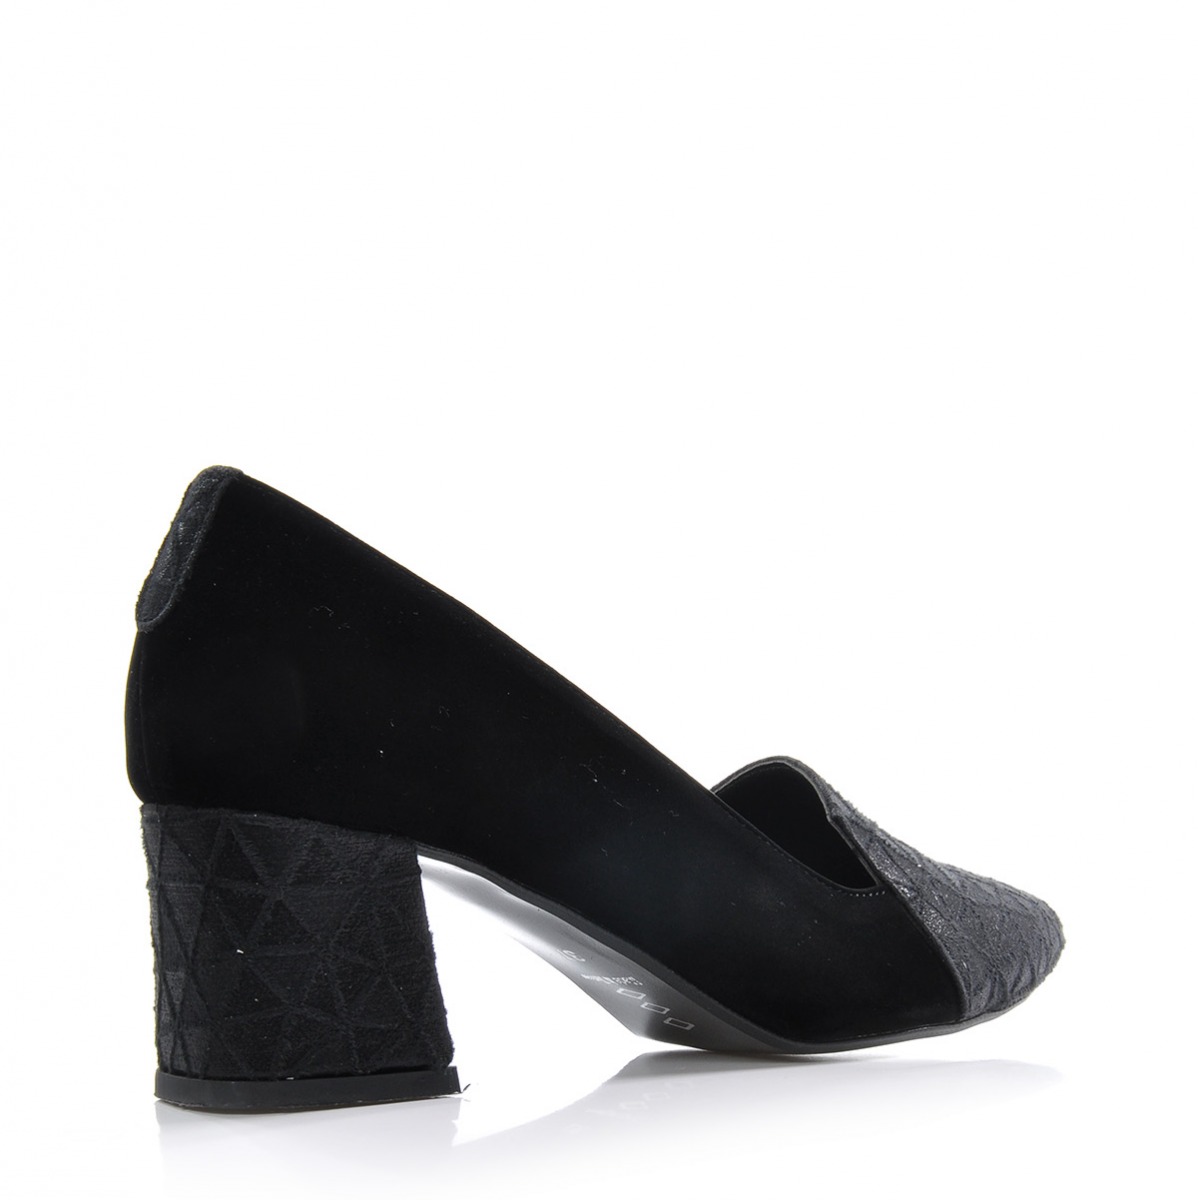 Flo Kadın  Siyah Klasik Topuklu Ayakkabı VZN-333Y. 1